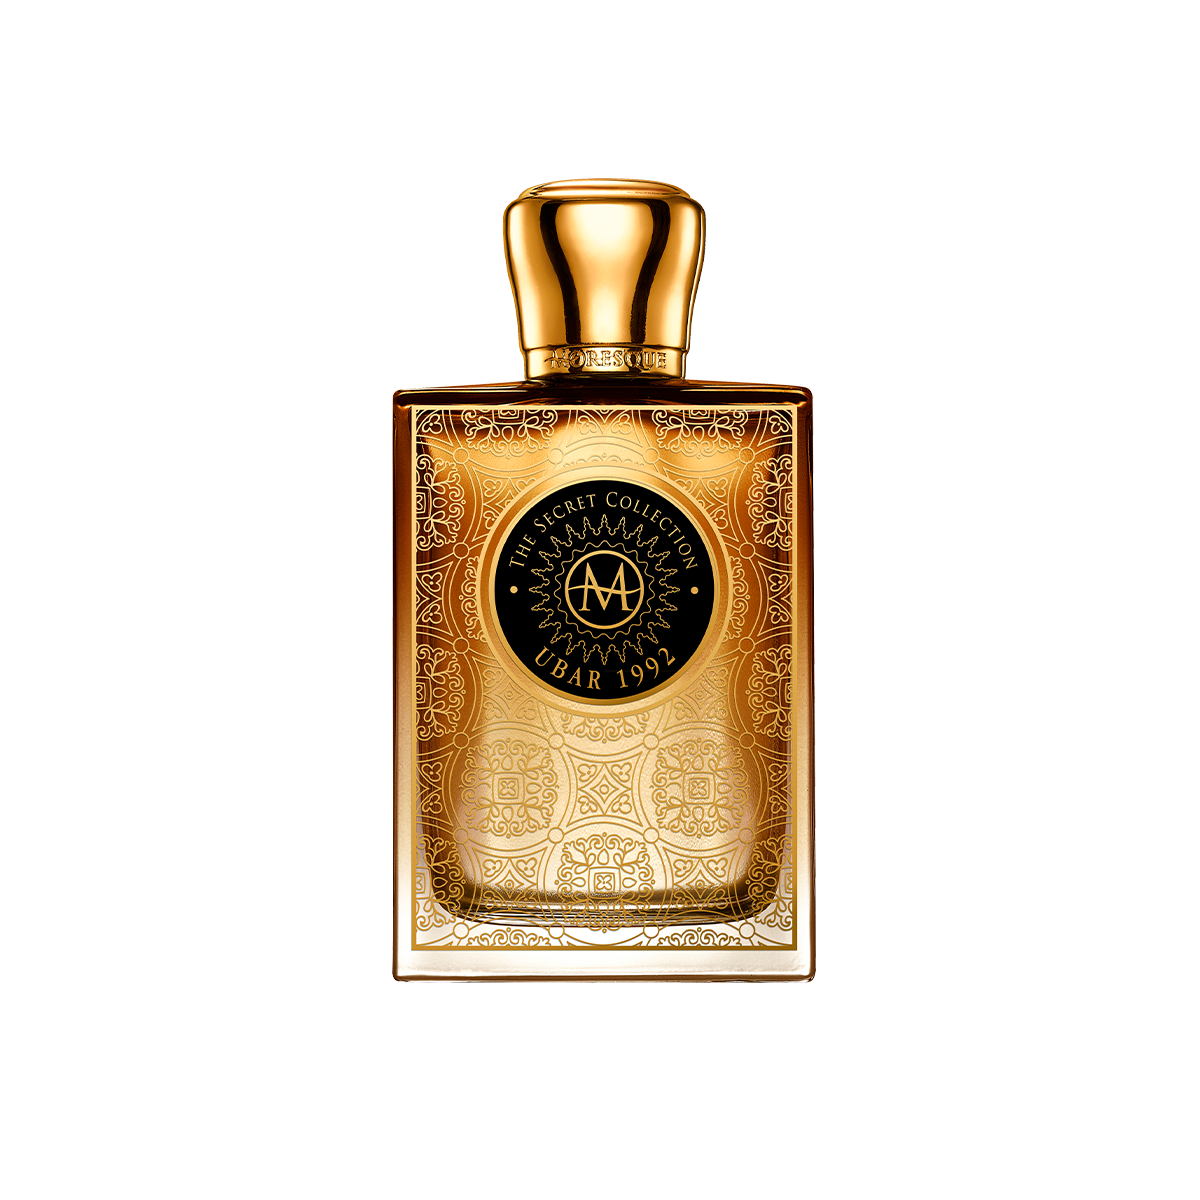 Secret Collection / Ubar 1992 <br> Eau de Parfum 75ml